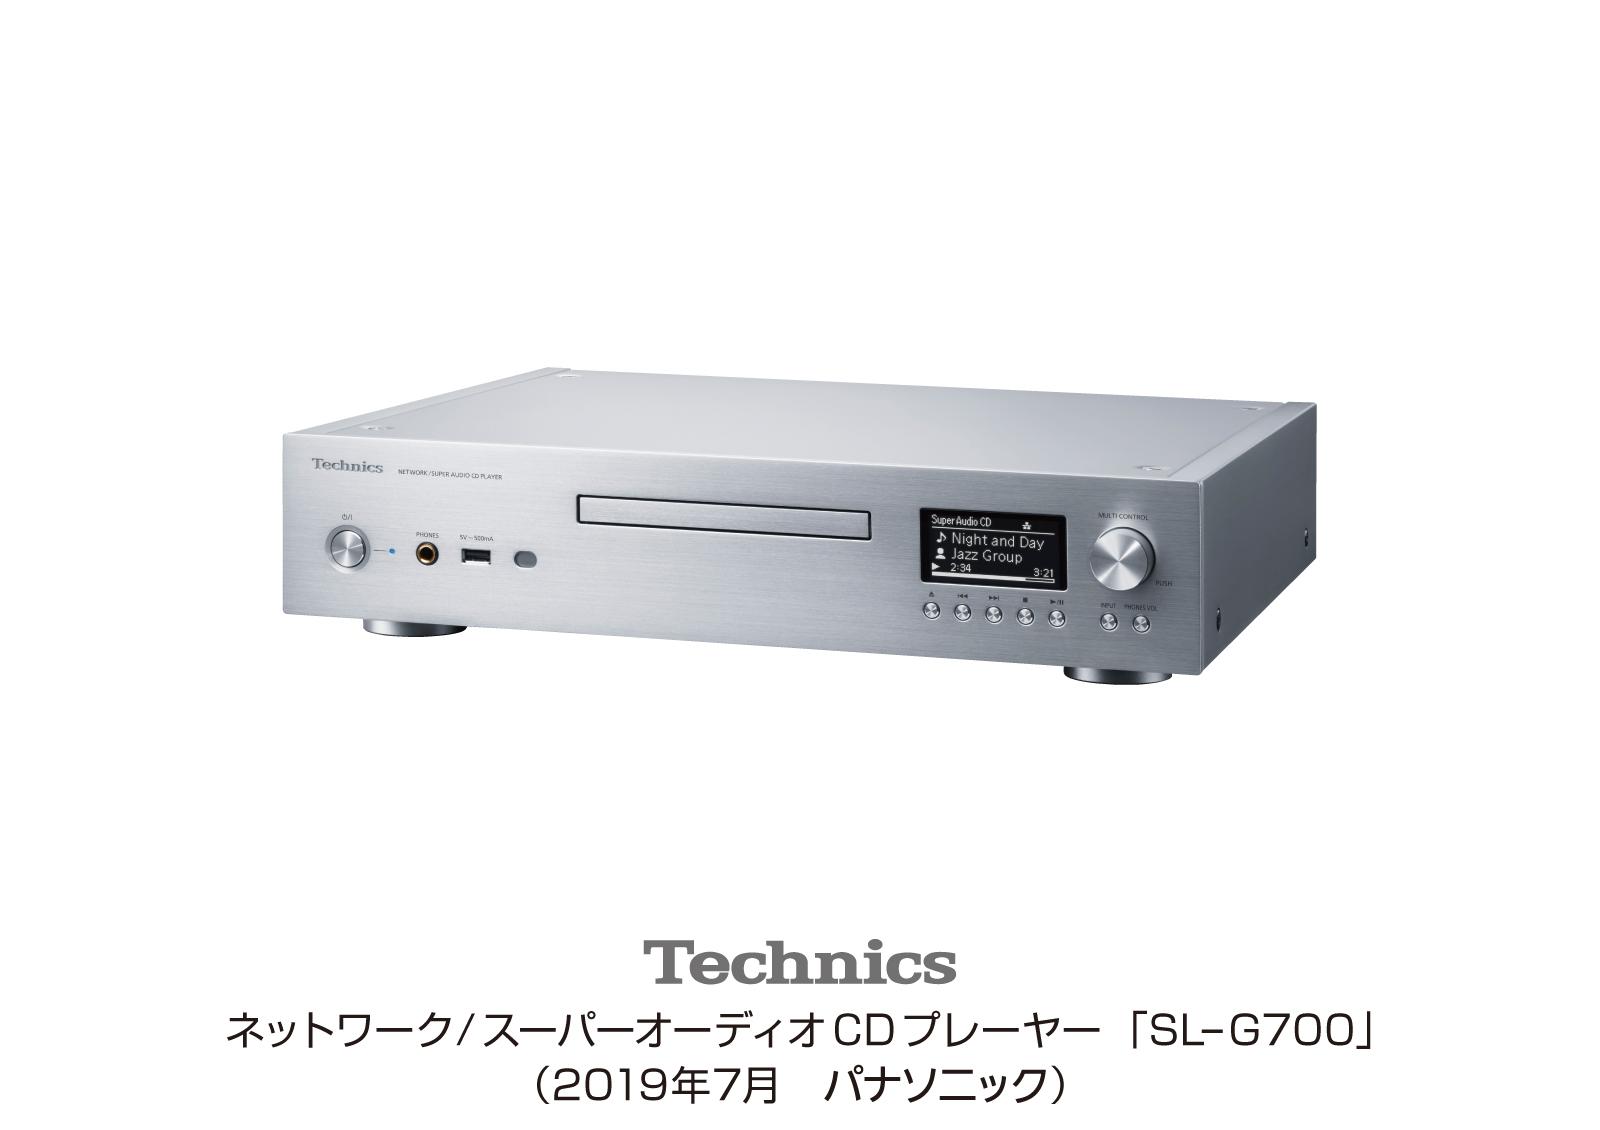 テクニクス ネットワーク/スーパーオーディオCDプレーヤー SL-G700